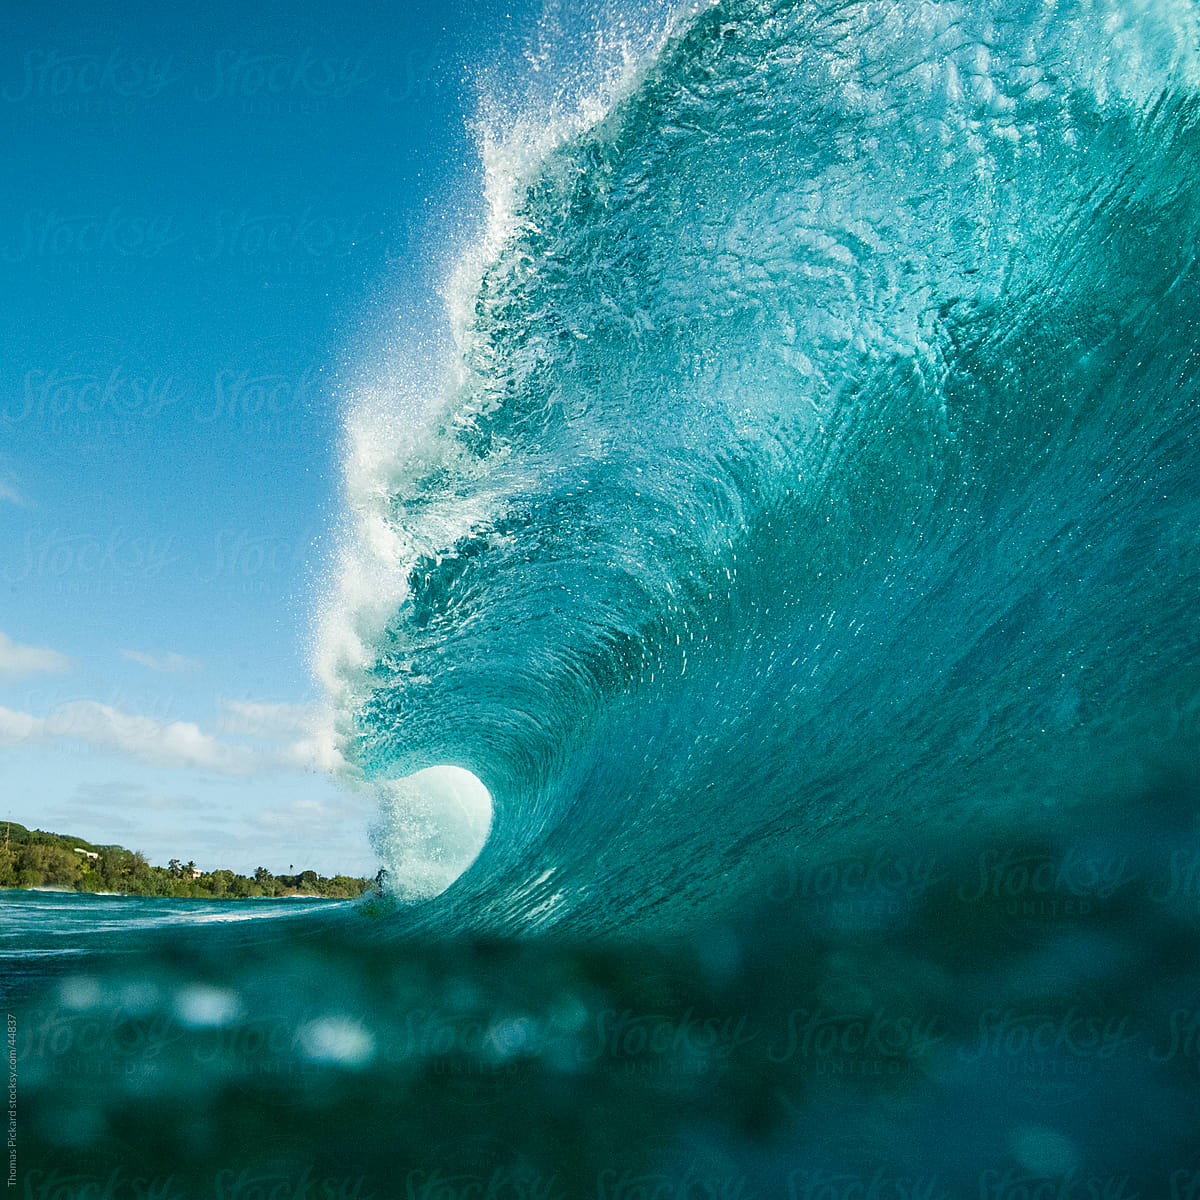 Wave breaking over reef, Cook Islands.